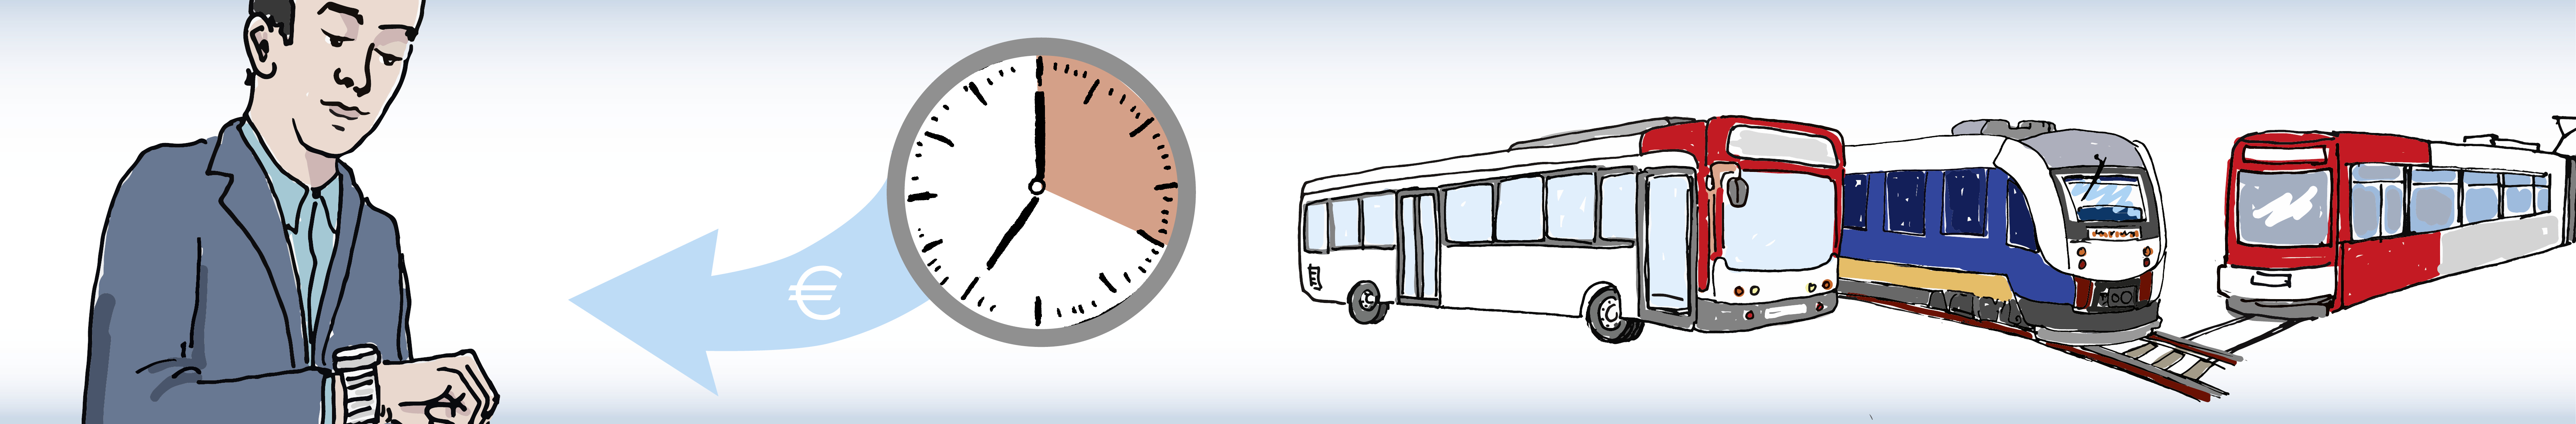 Ein Mann blickt auf seine Uhr. Außerdem ist eine Uhr mit 20 Minuten-Zeitraum zu sehen sowie Zug, Bus und Straßenbahn.